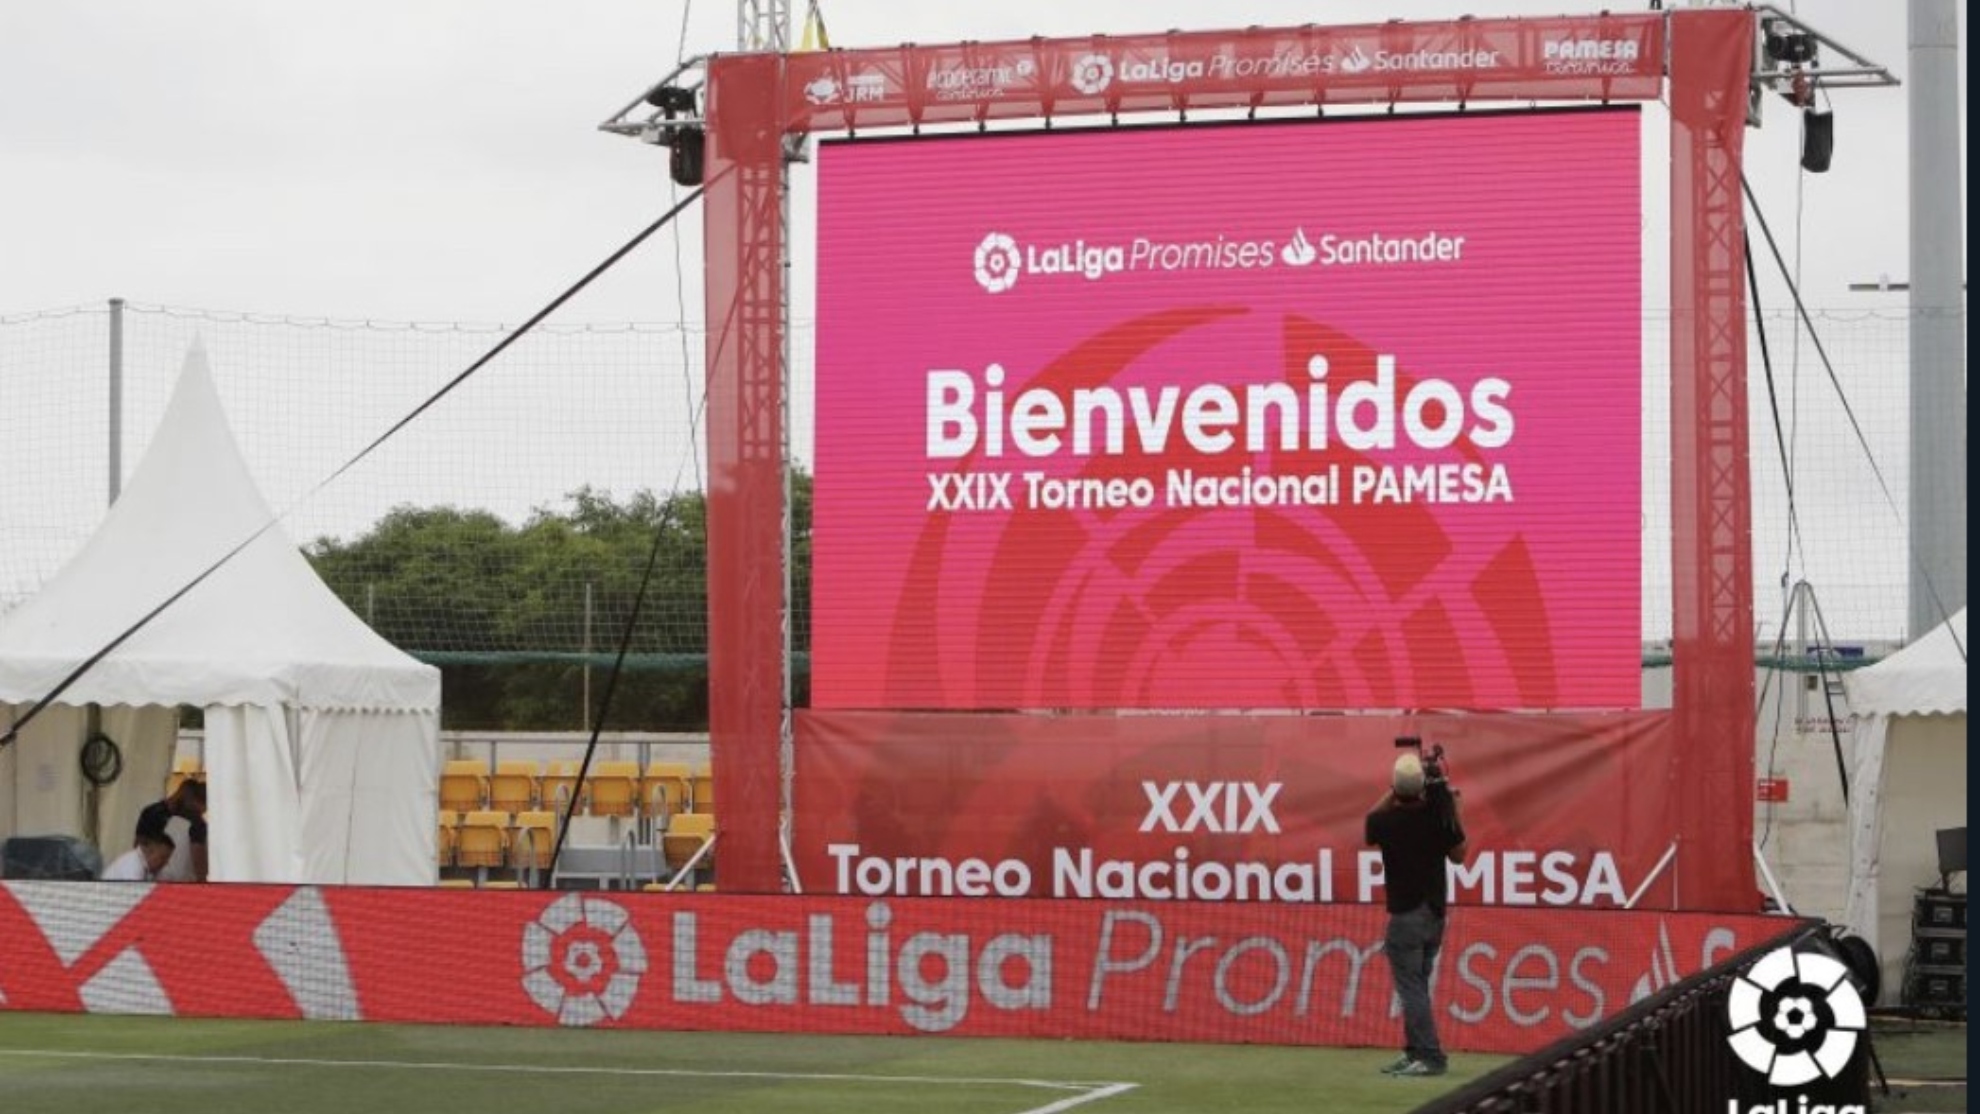 La Ciudad Deportiva Pamesa del Villarreal es la sede de las XXIX edición de la Promises.